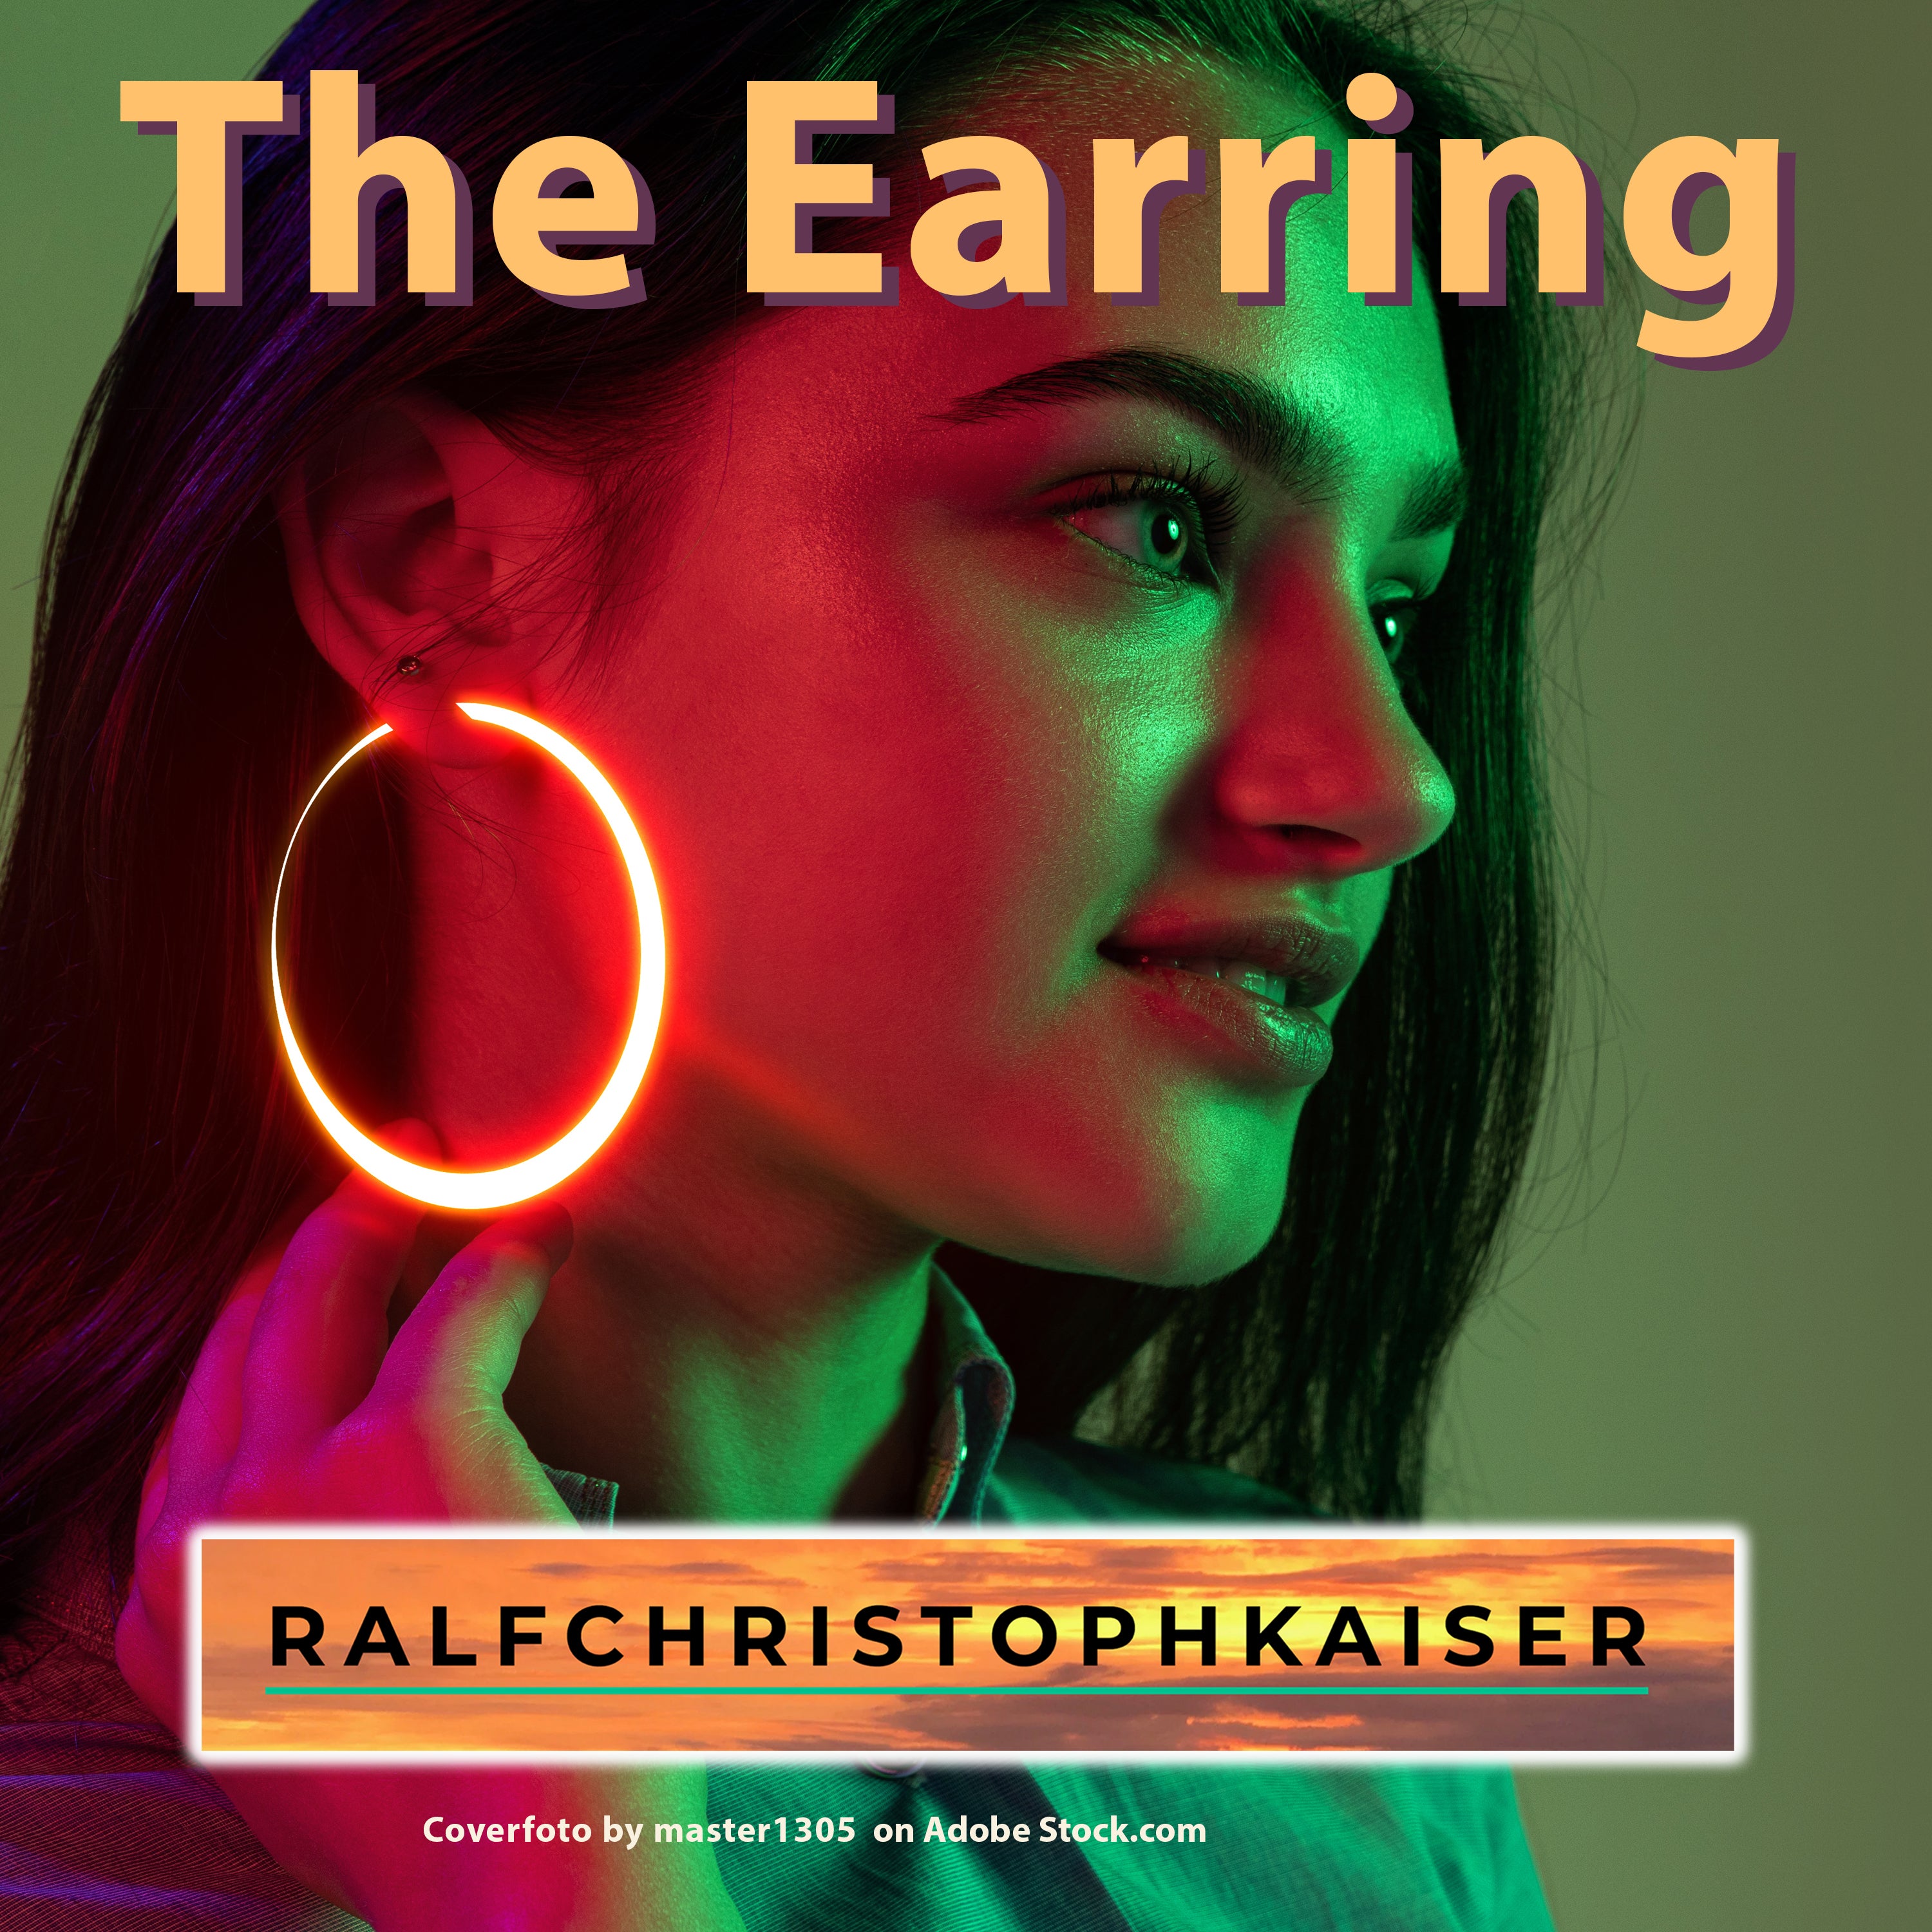 "The Earring"la nueva canción de Ralf Christoph Kaiser ahora como archivo wav de 32 bit 48 kHz y como mp3 para descargar aquí en la tienda con la letra en PDF